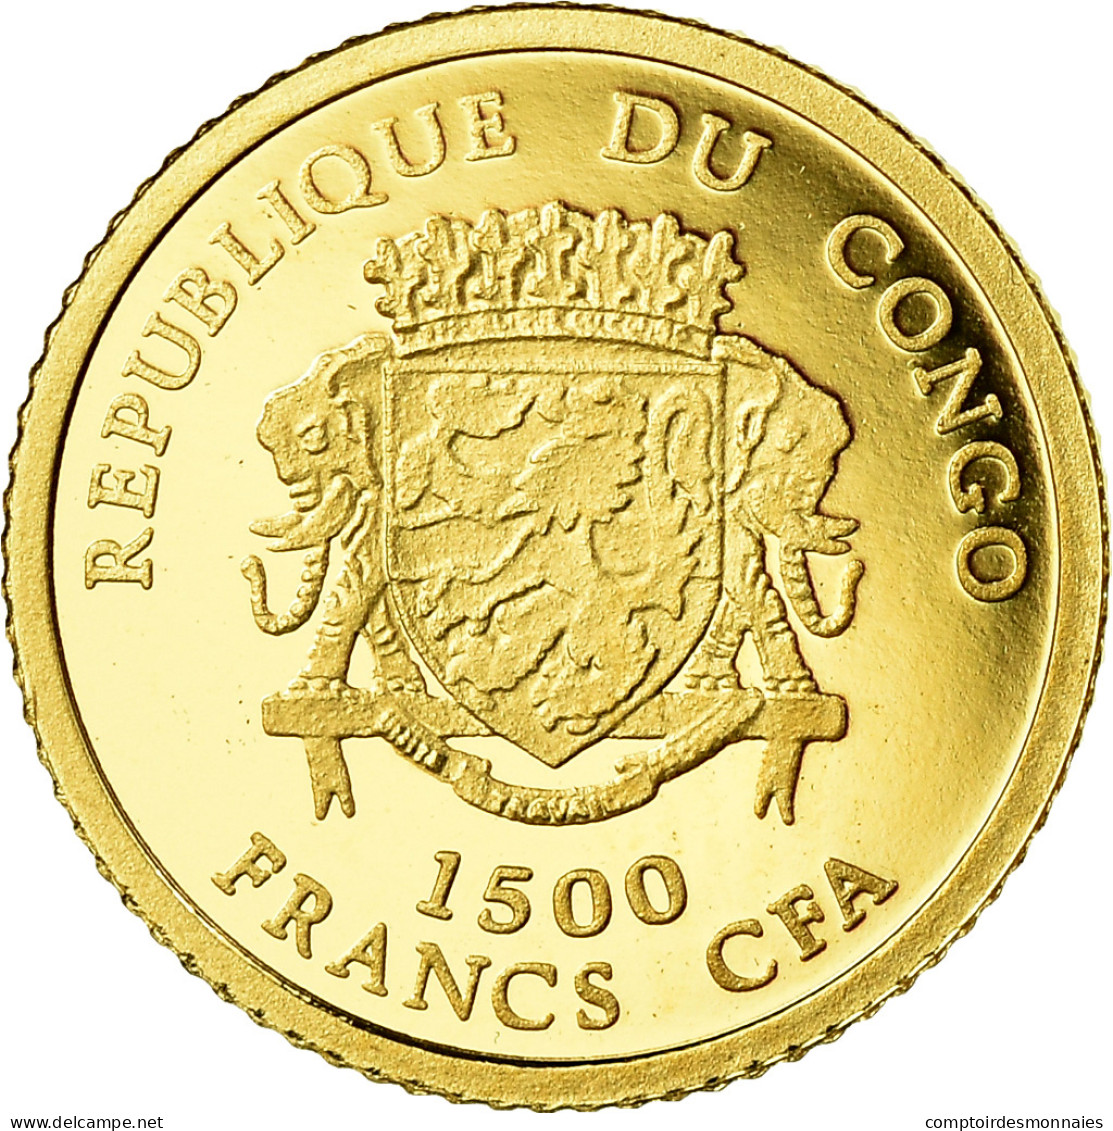 Monnaie, CONGO, DEMOCRATIC REPUBLIC, Napoléon Bonaparte, 1500 Francs CFA, 2007 - Congo (République Démocratique 1998)